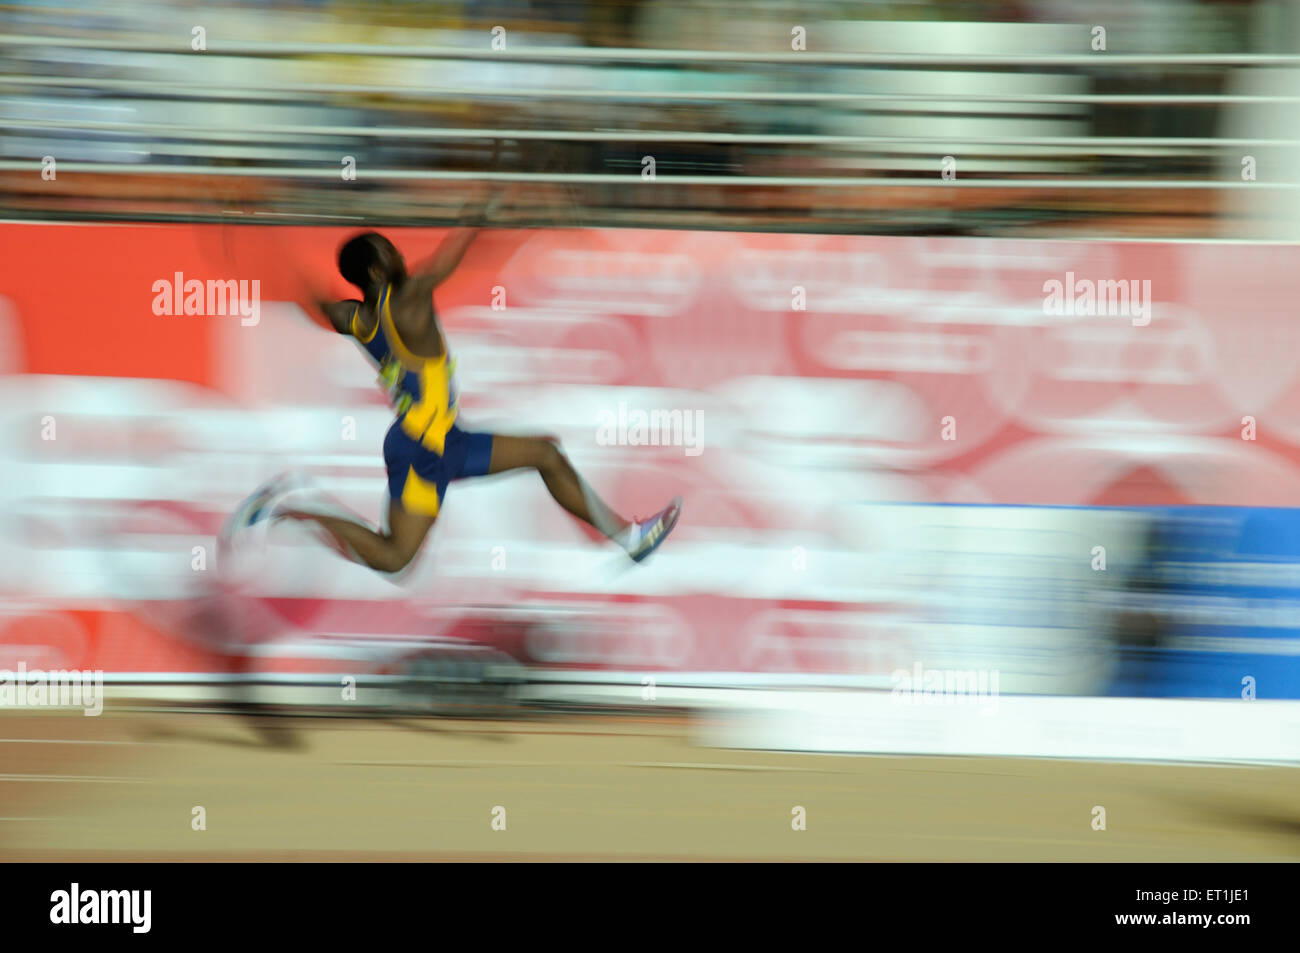 atleta salto lungo, sportivo salto lungo, pista e campo, competizione sportiva, gioco atletico, Pune, Maharashtra, India, Asia, asiatico, Indiana Foto Stock